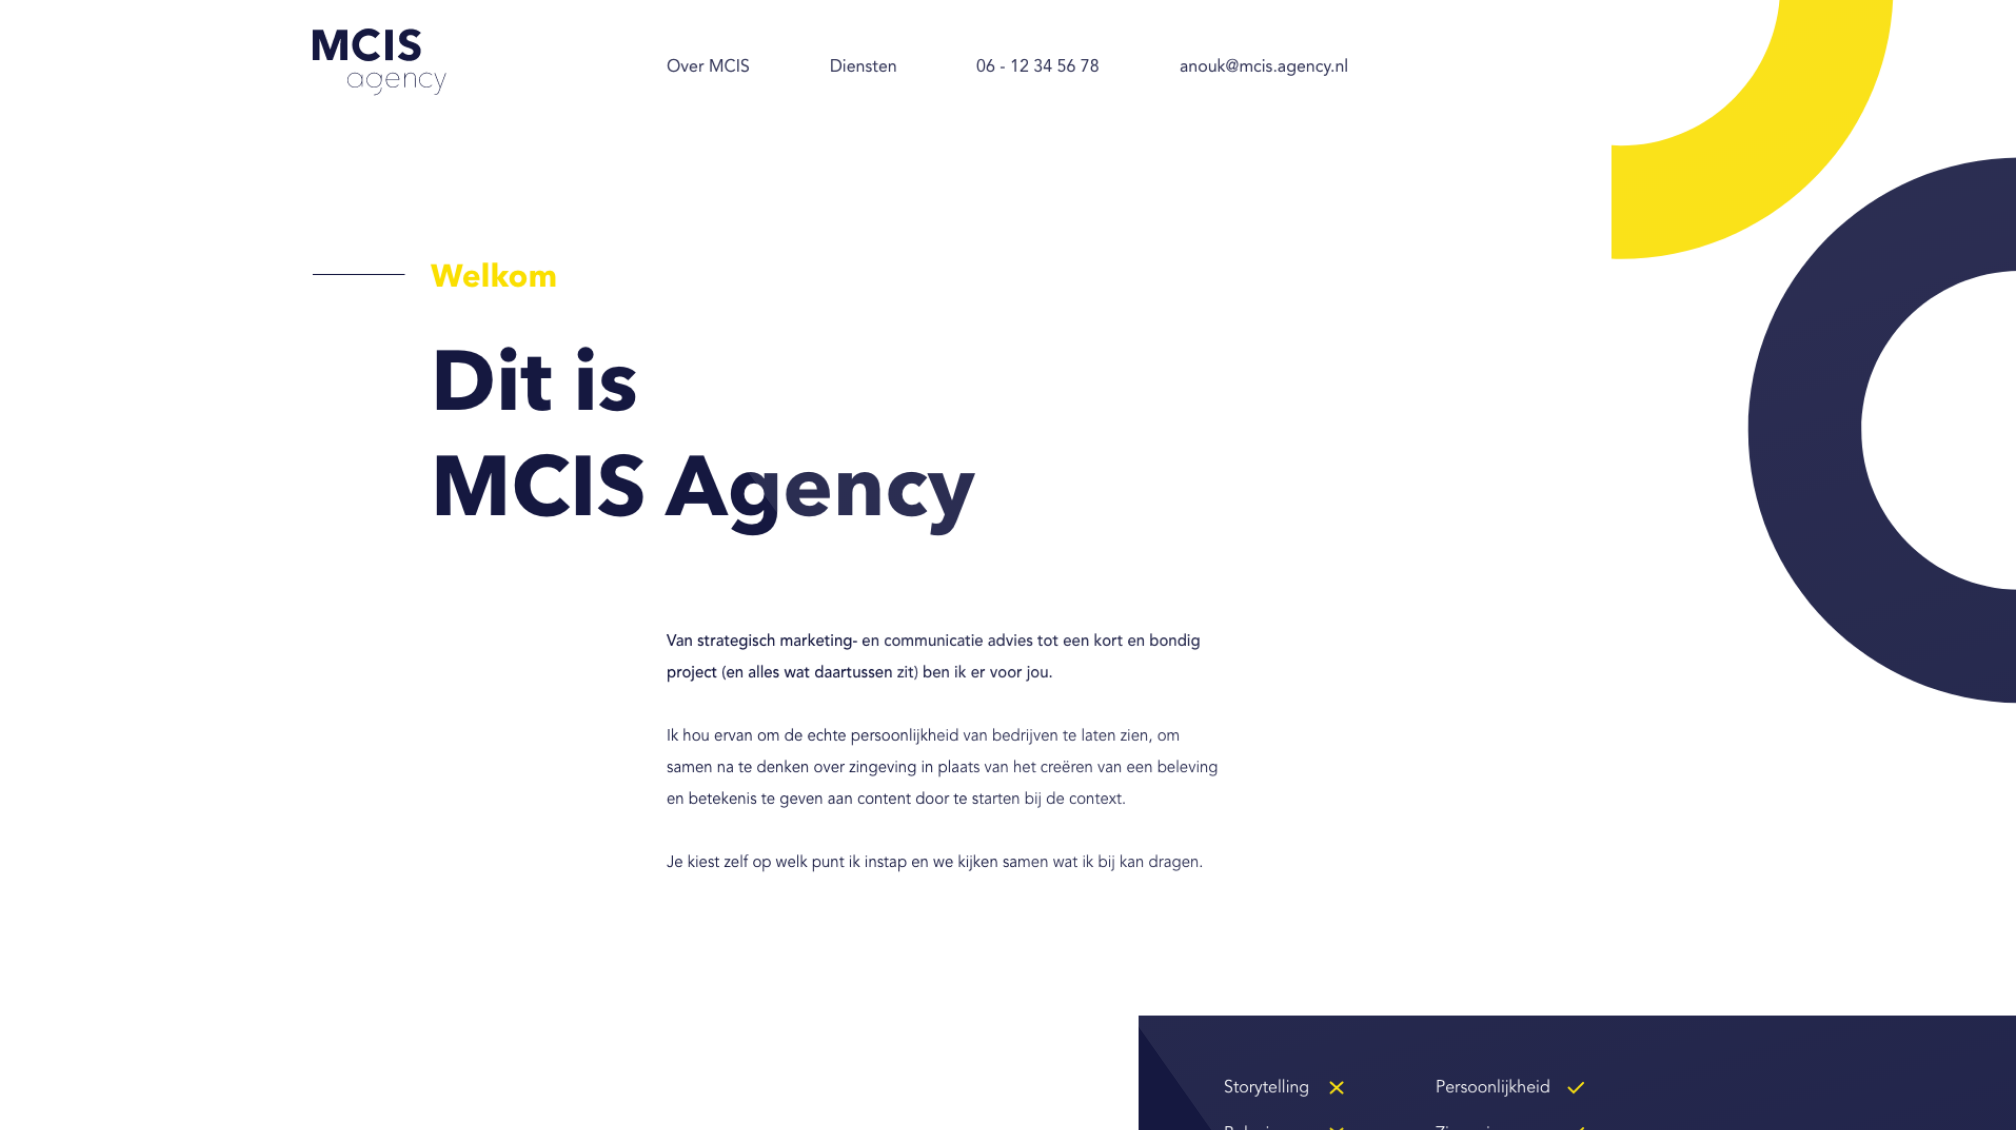 MCIS Agency